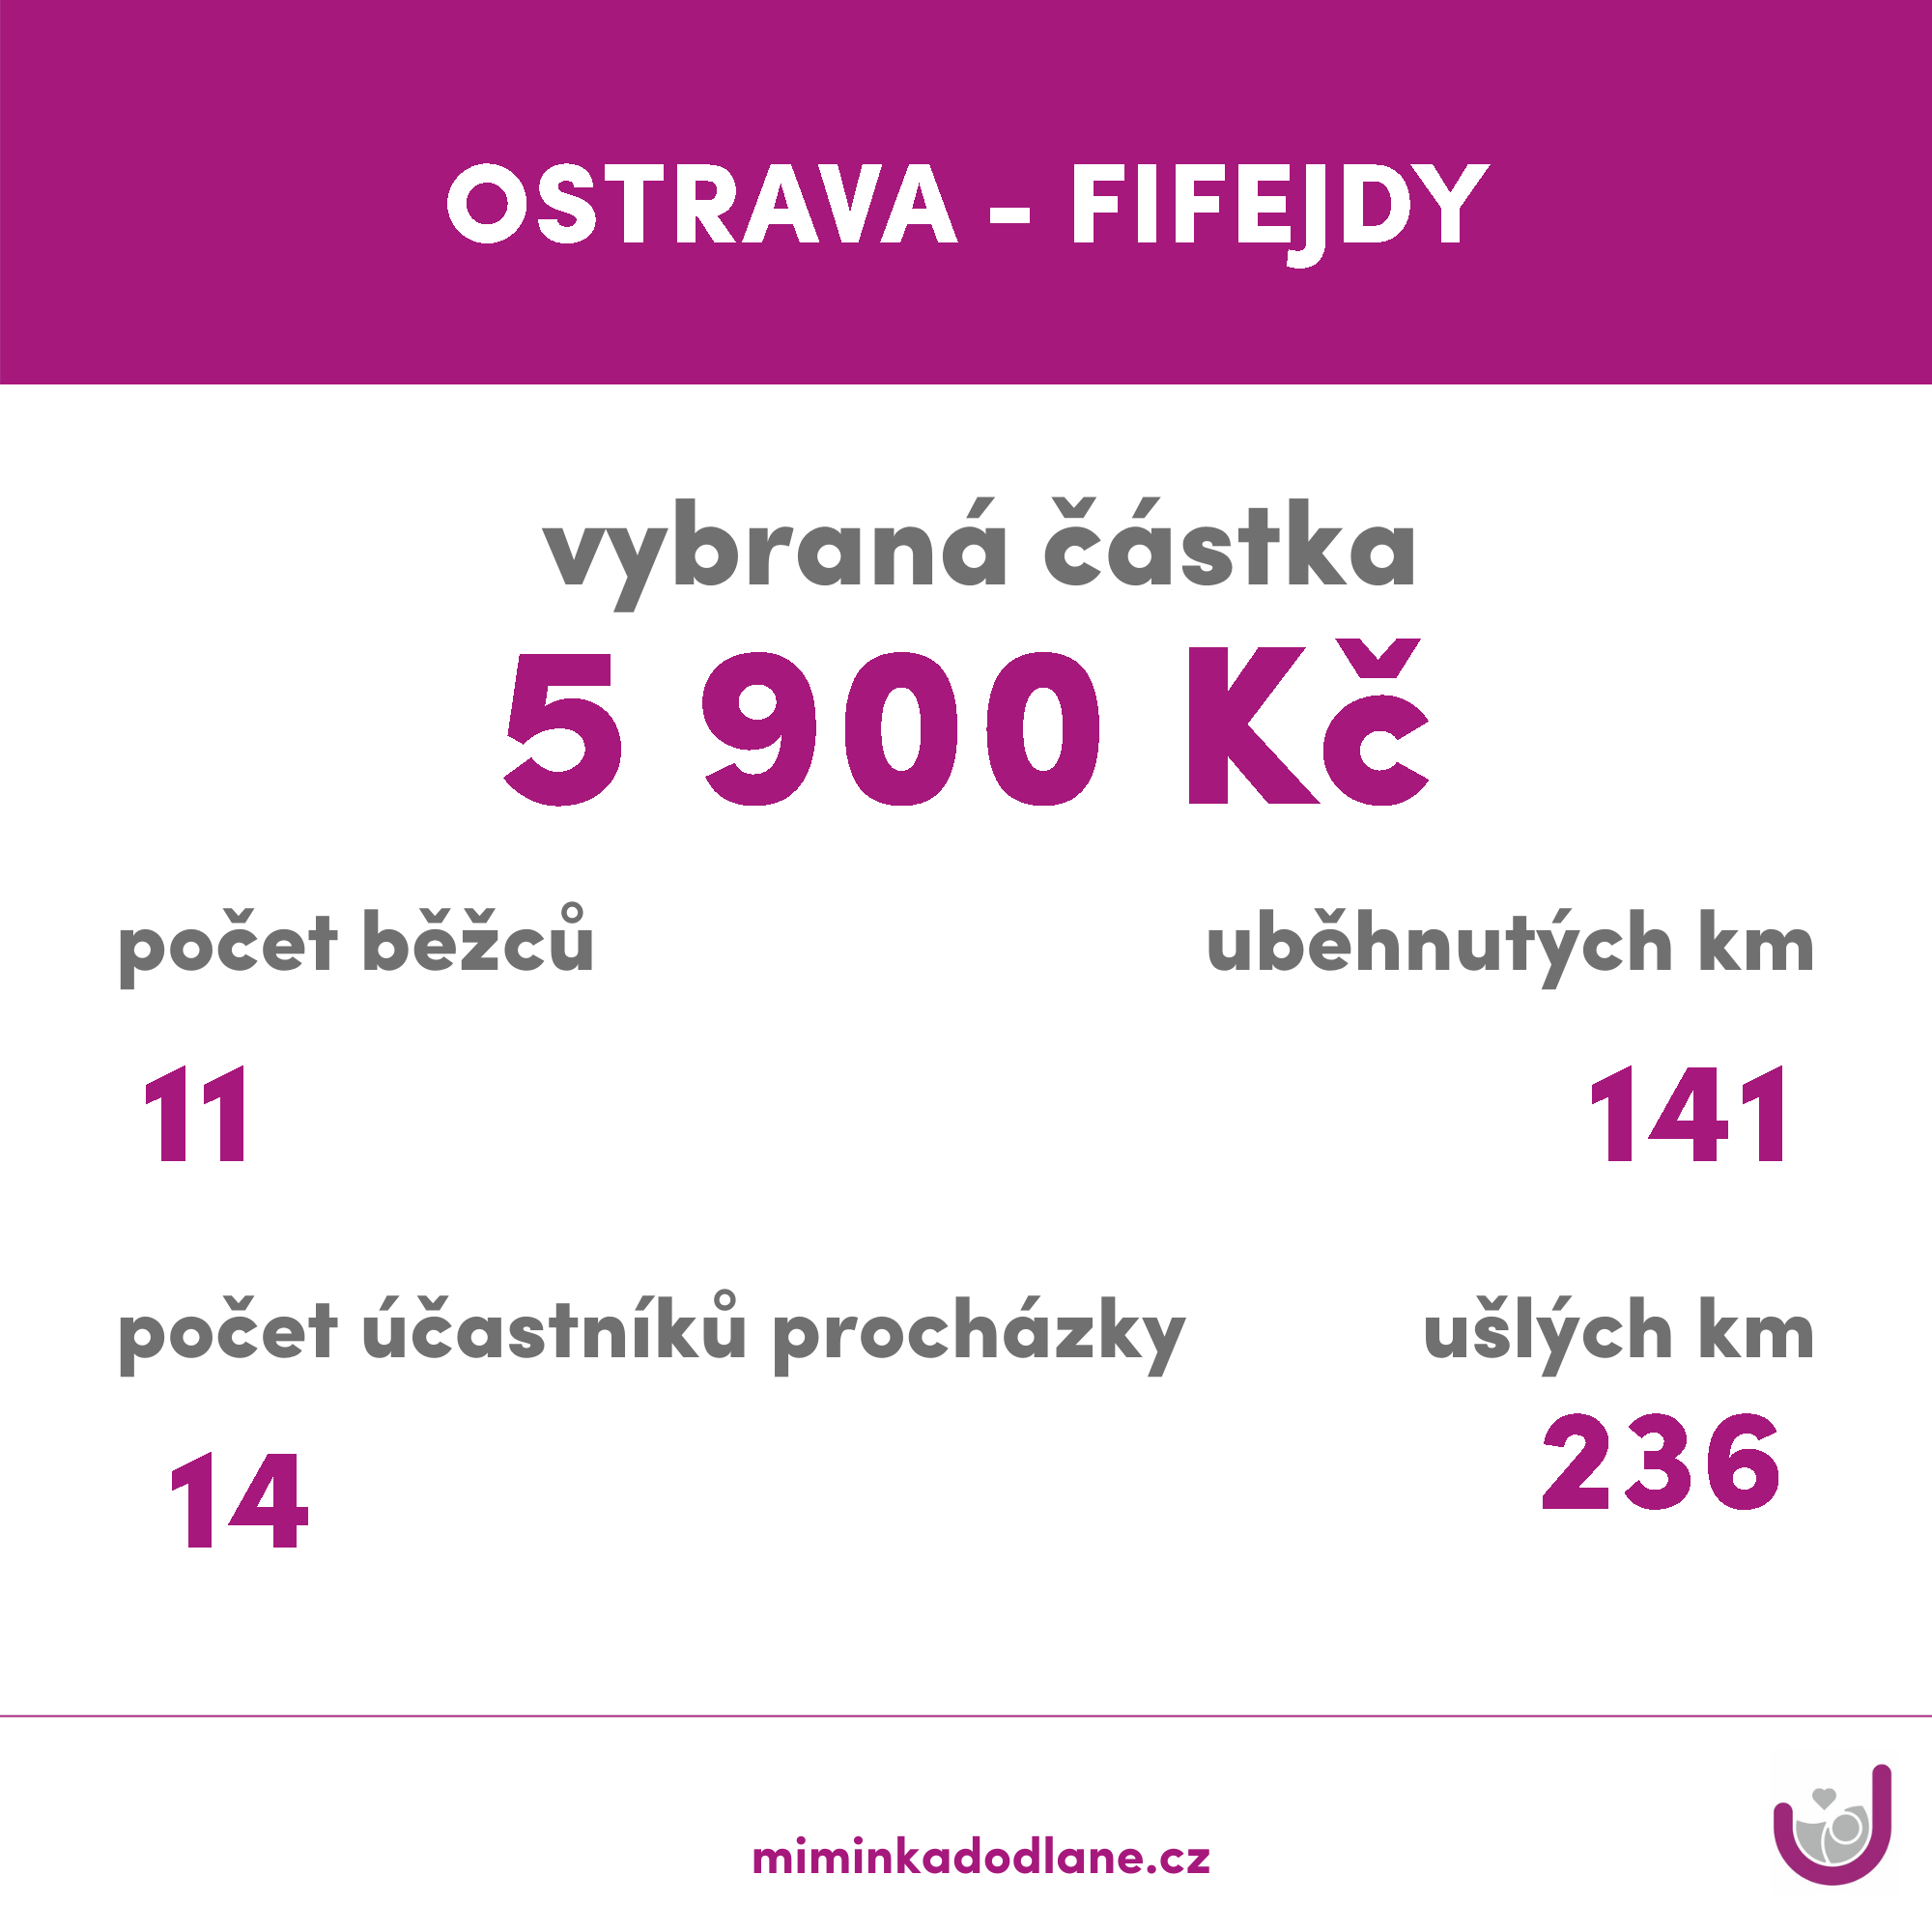 OSTRAVA - FIFEJDY